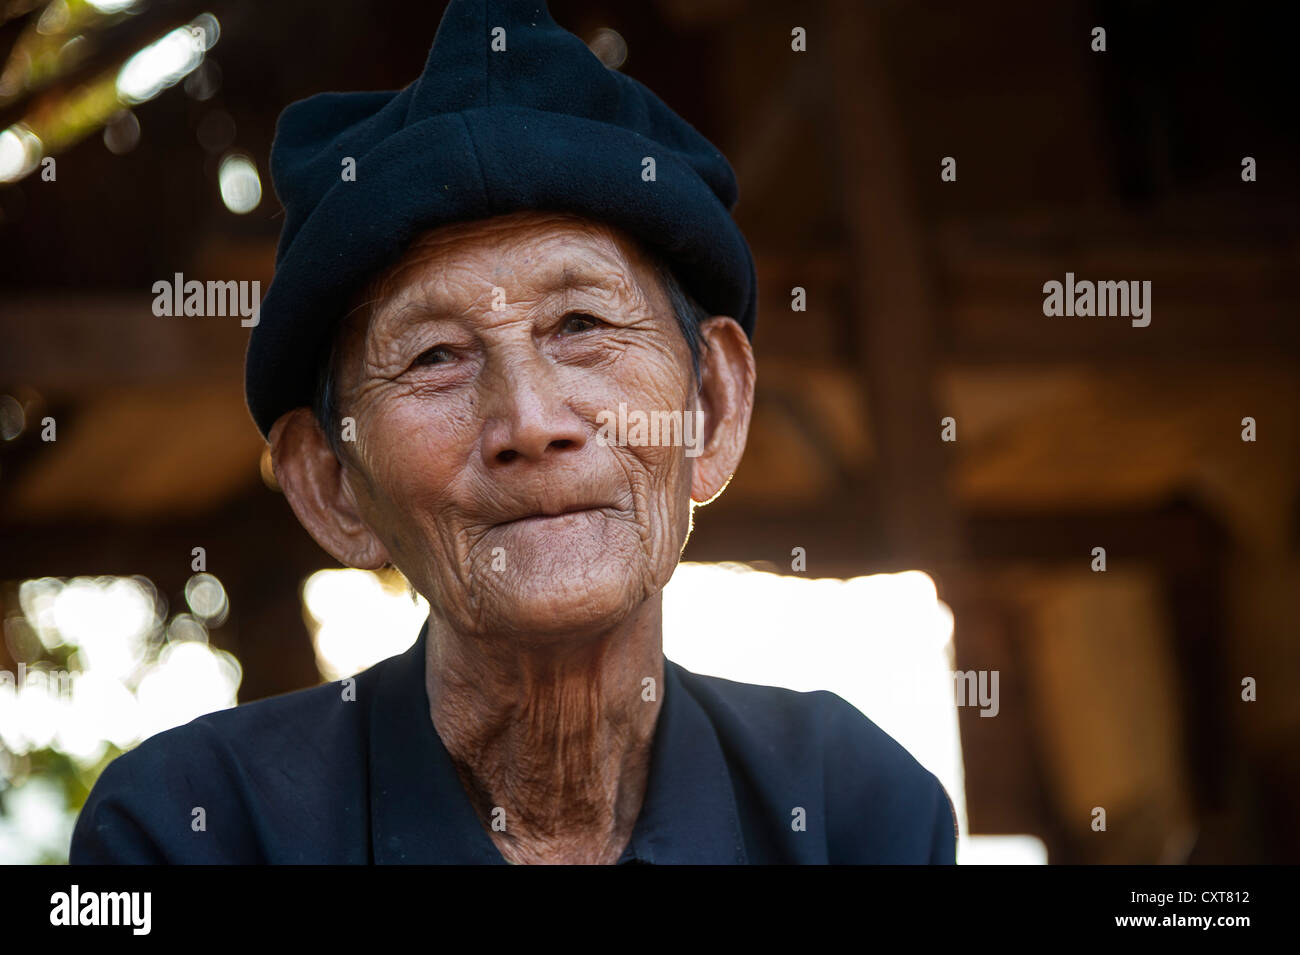 Un homme âgé de la colline, les gens de la tribu Hmong, portrait, nord de la Thaïlande, la Thaïlande, l'Asie Banque D'Images